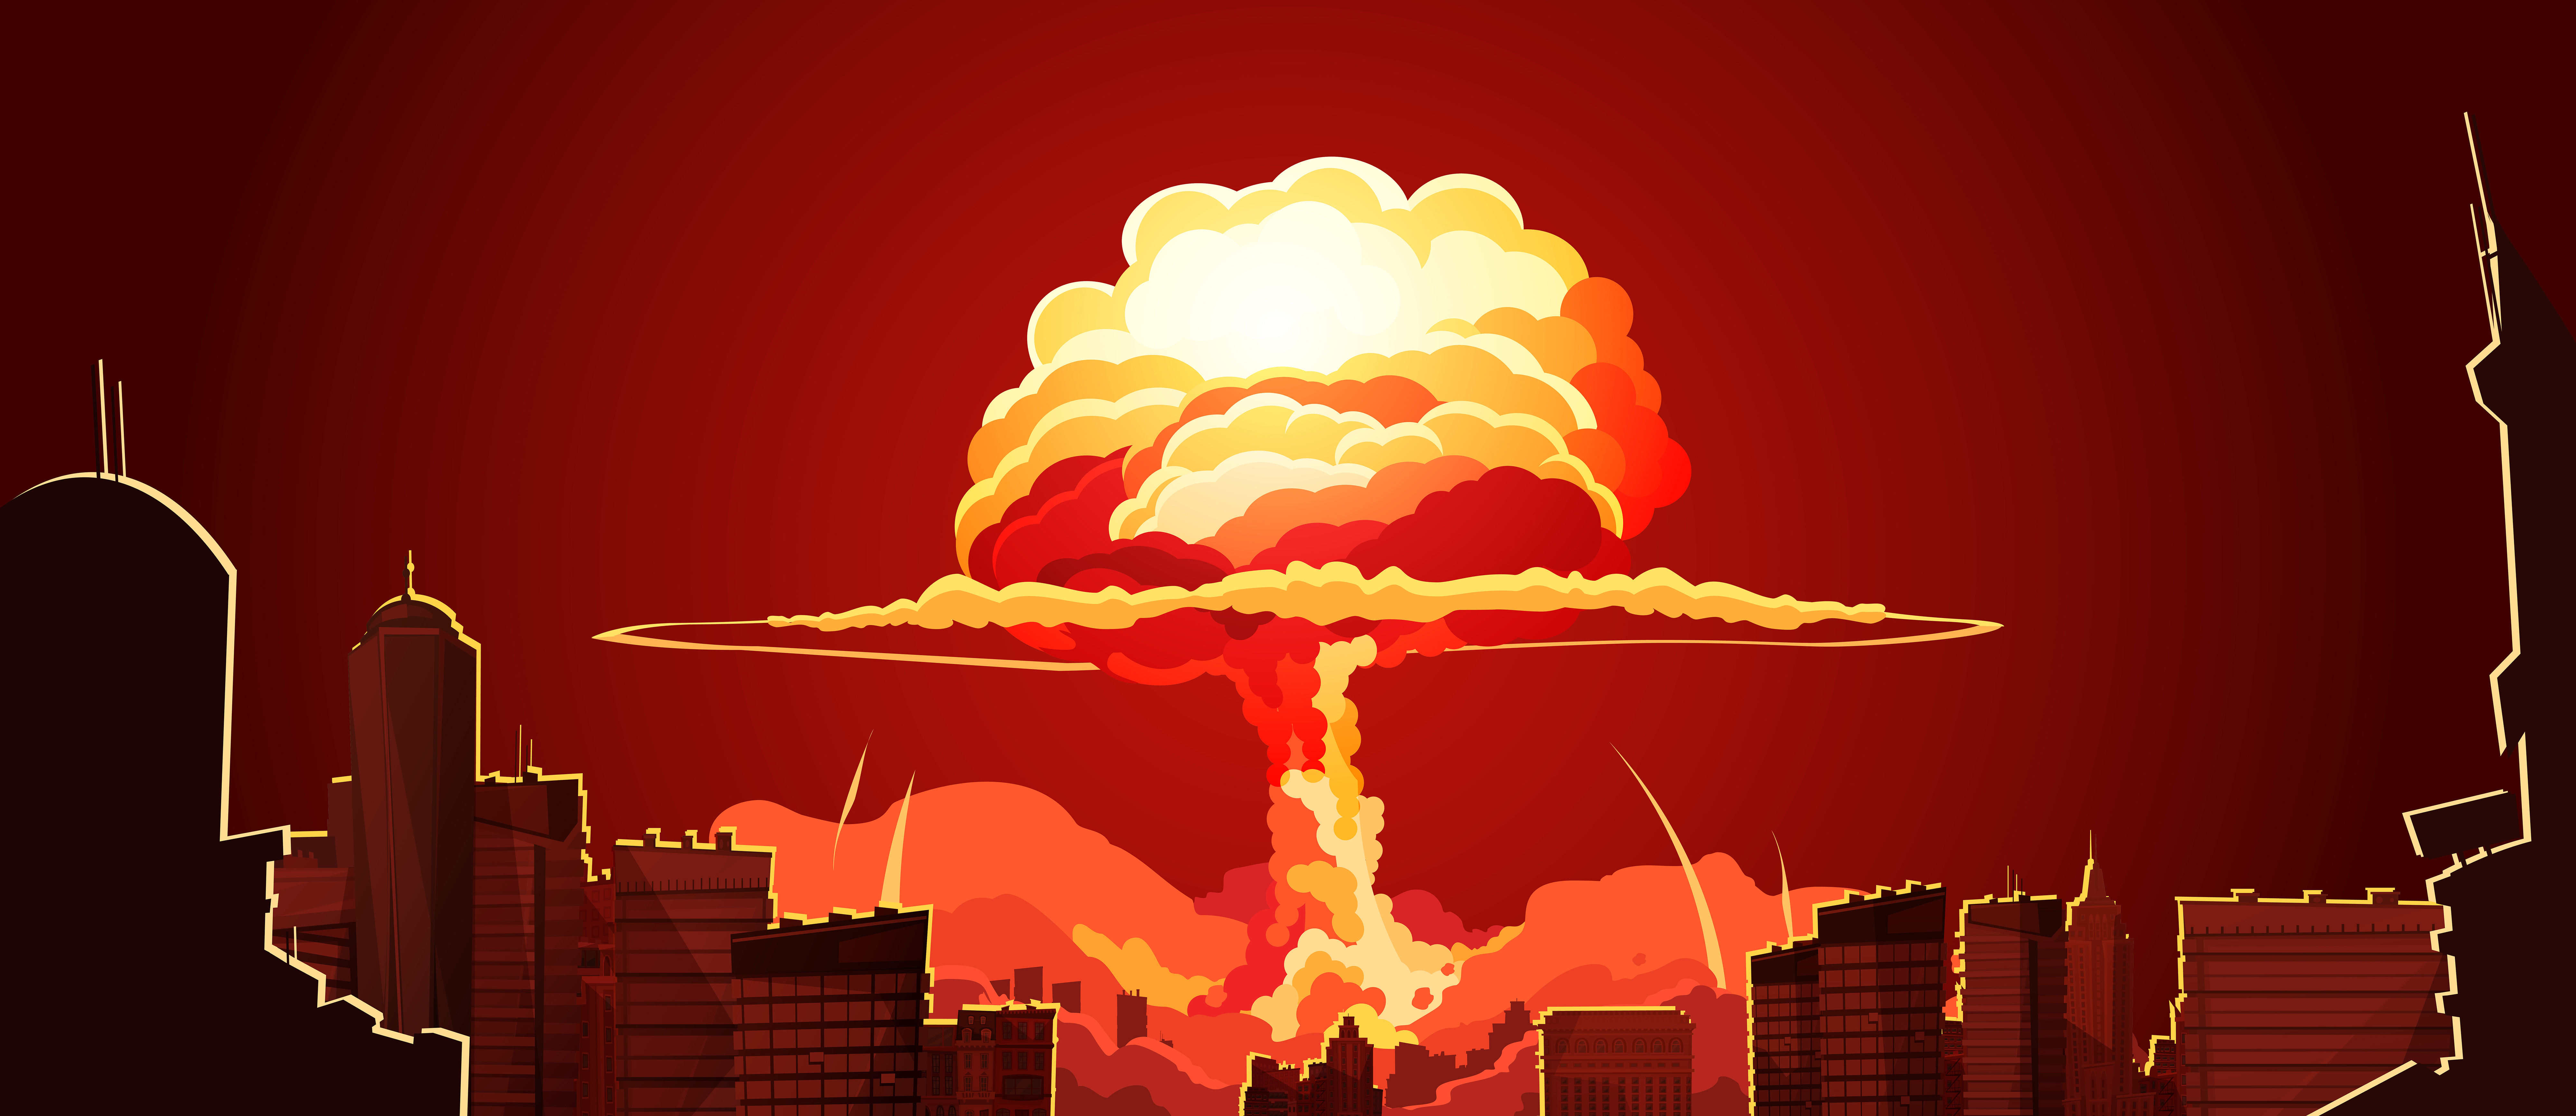 Ядерная пятерка. Ядерный взрыв. Ядерный взрыв фон. Ядерный взрыв арт. Атомный гриб.